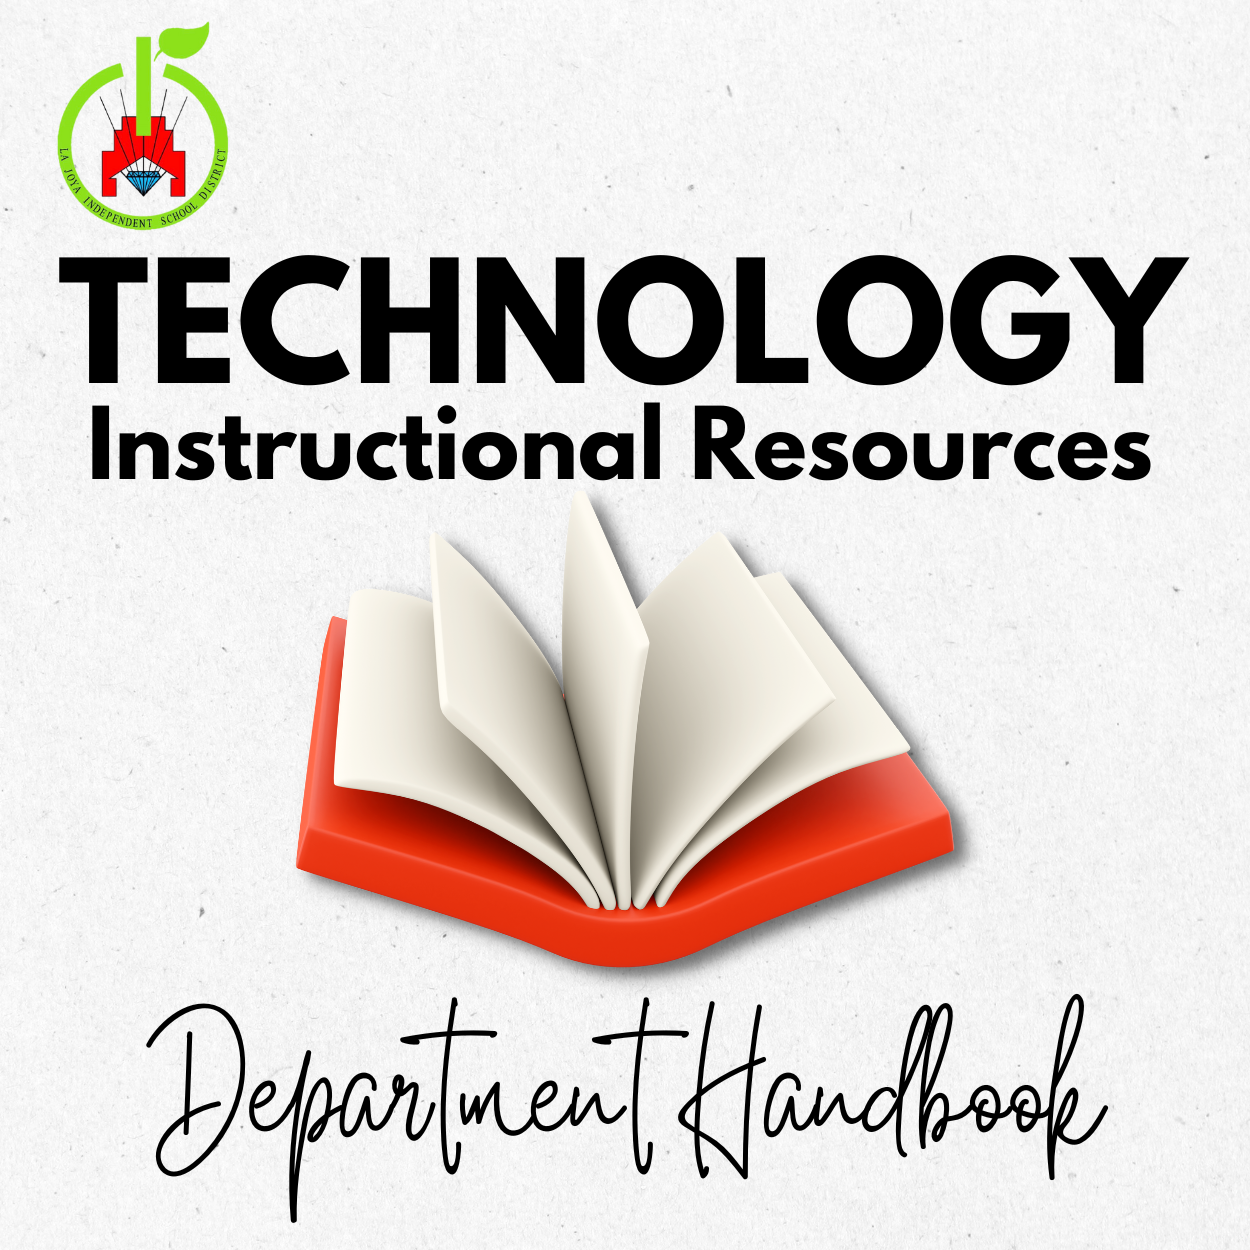 Technology Department Handbook